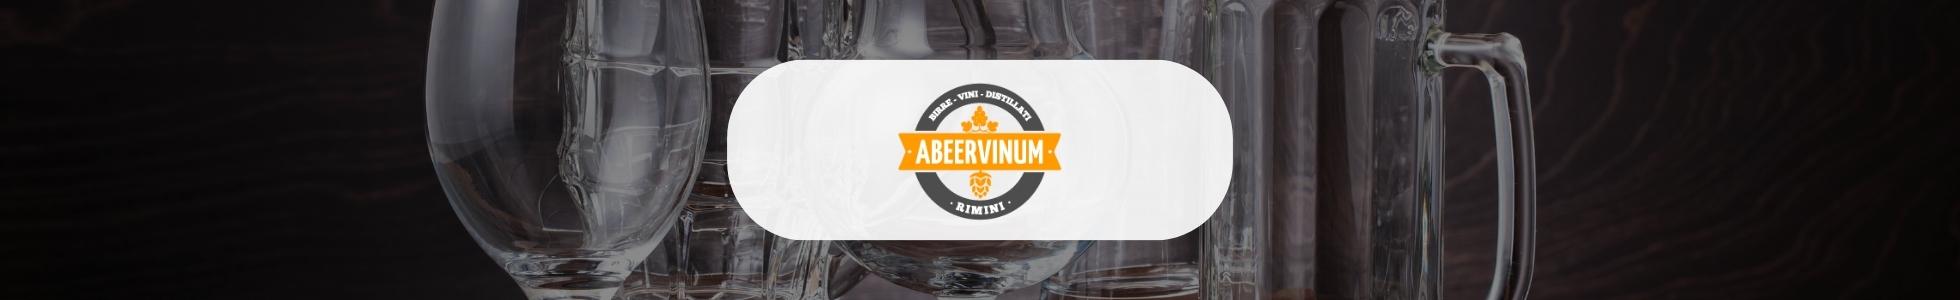 Abeervinum - Shop online birre